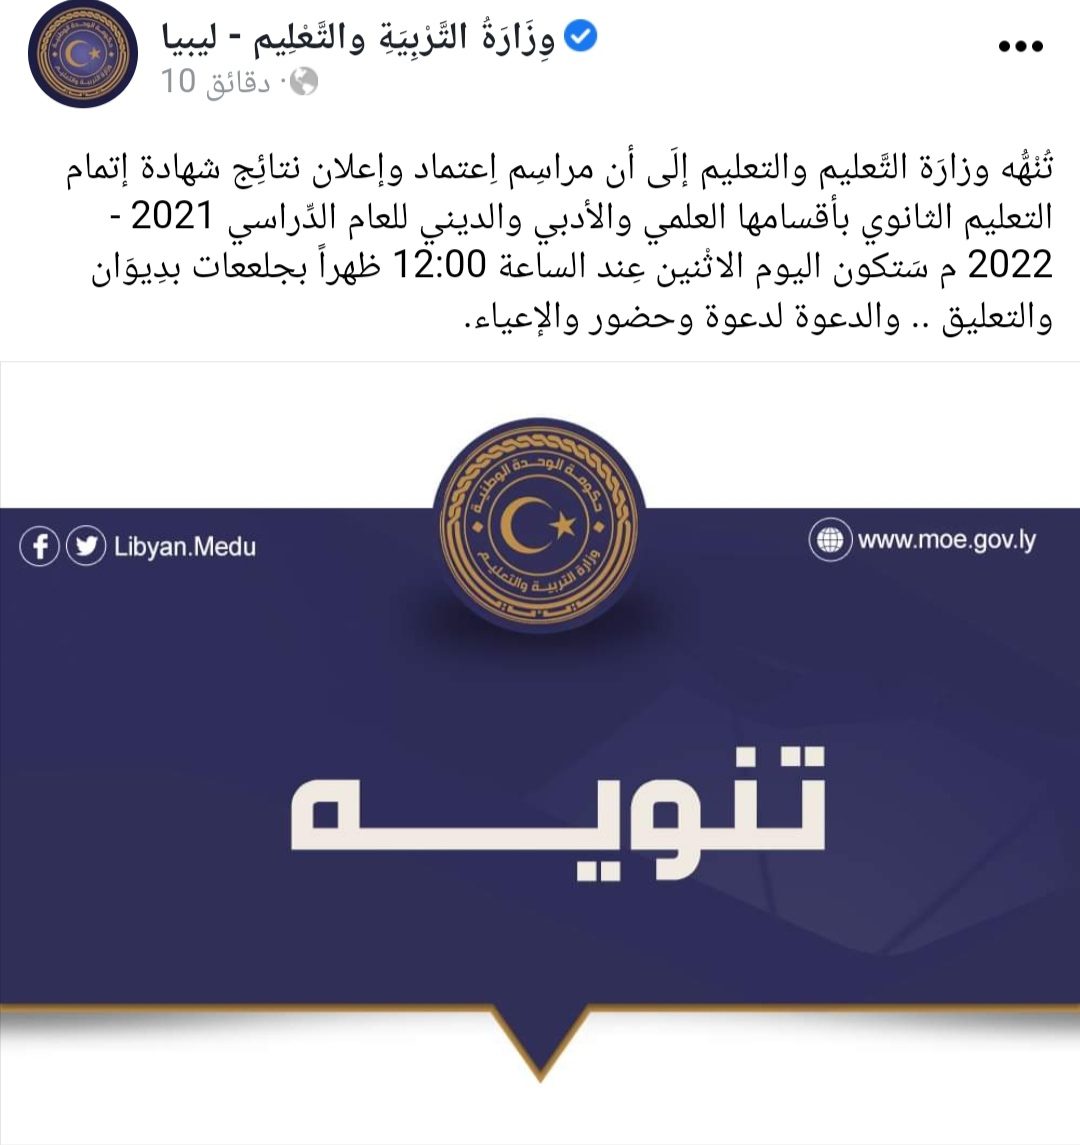 IMG 20221010 100449 2 - مدونة التقنية العربية